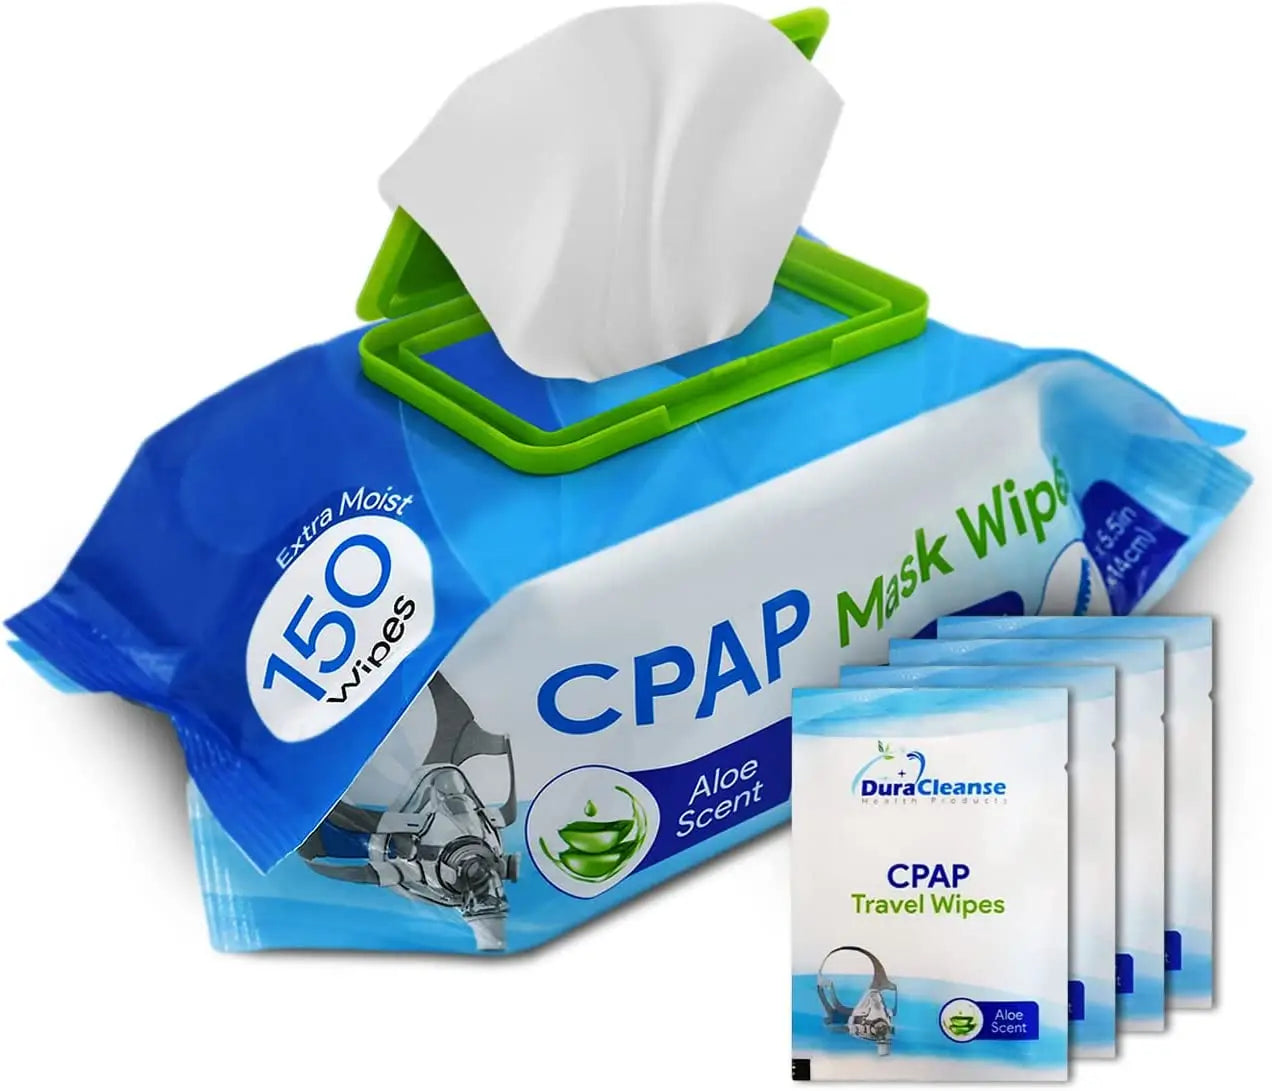 CPAP Supplies